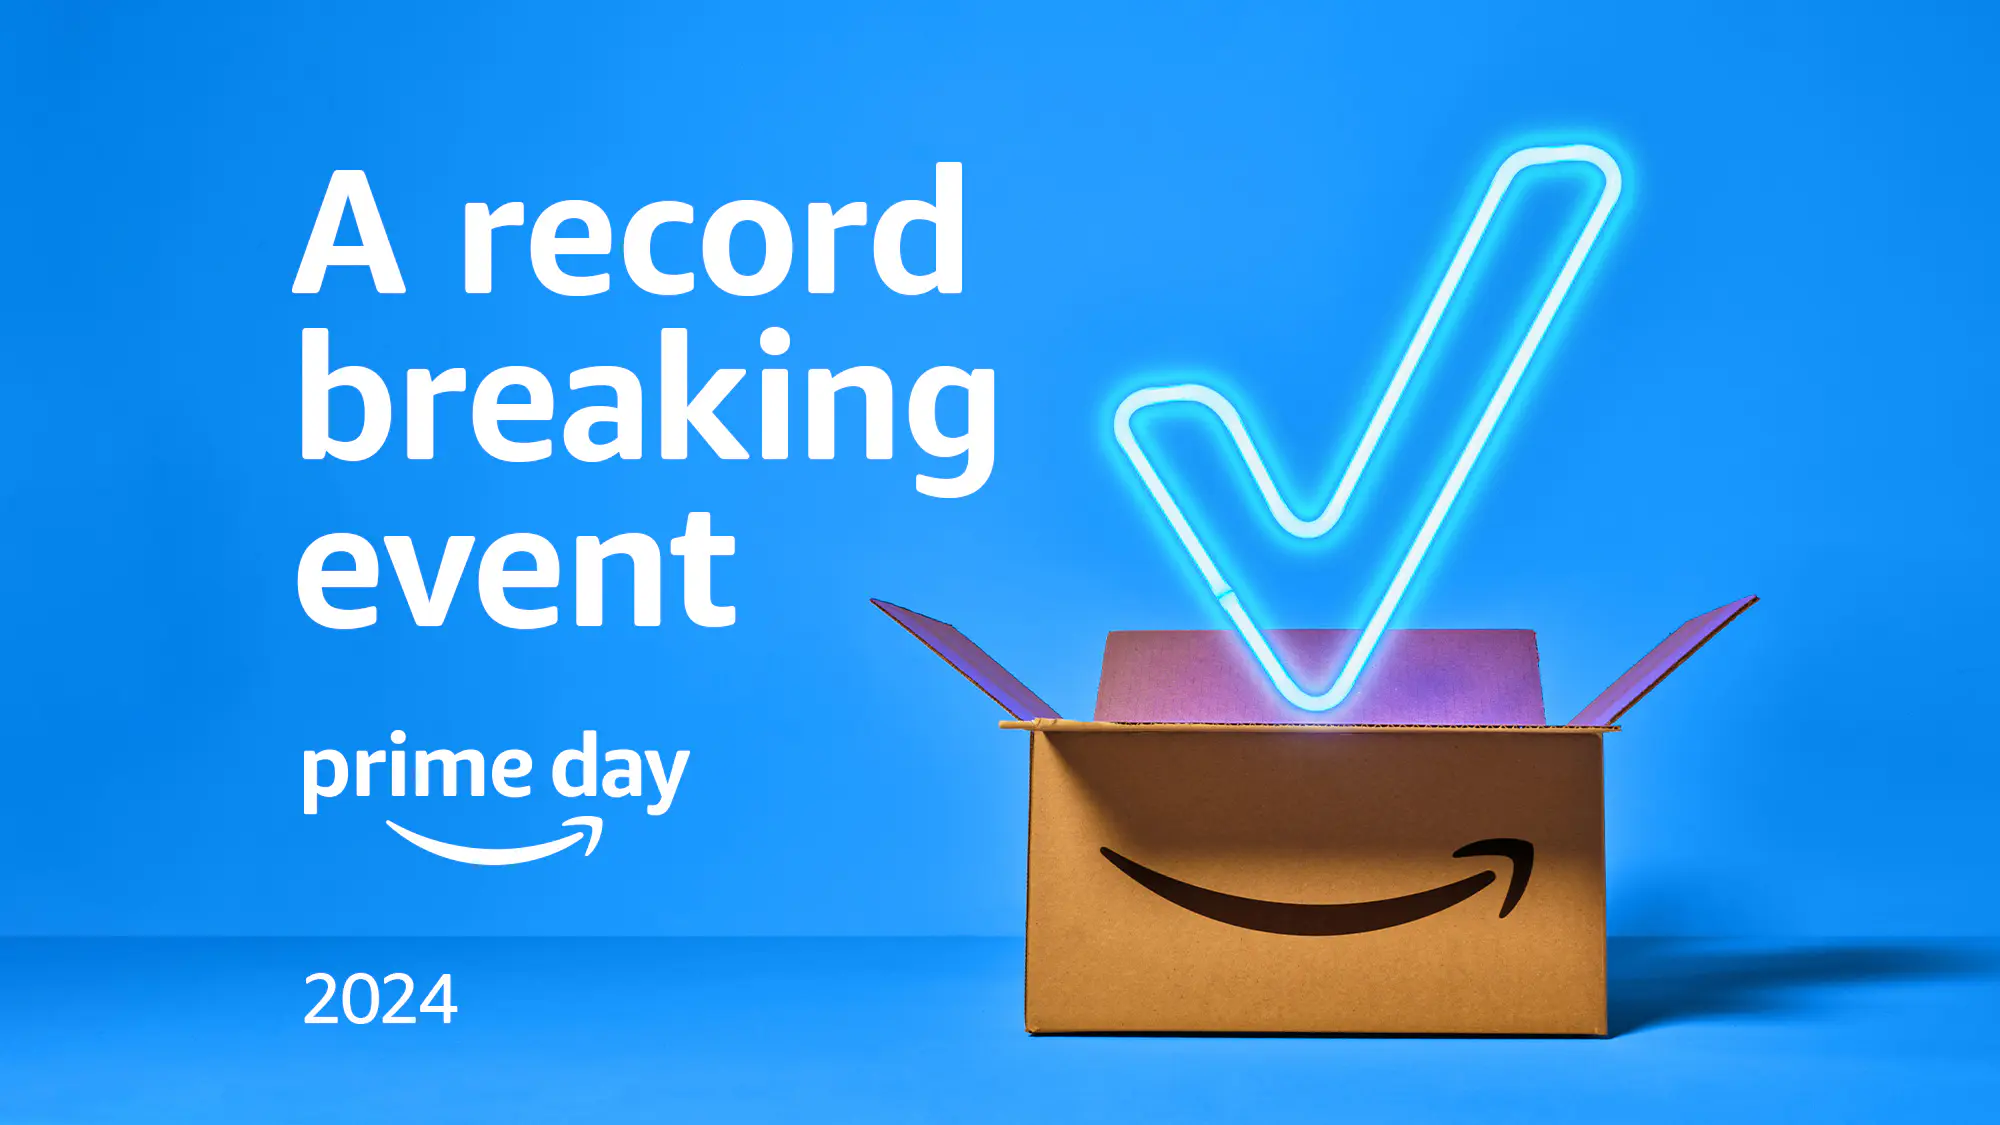 Amazon ghi nhận doanh số kỷ lục mùa Prime Day 2024, các đối tác bán hàng đã bán hơn 200 triệu sản phẩm trong suốt sự kiện